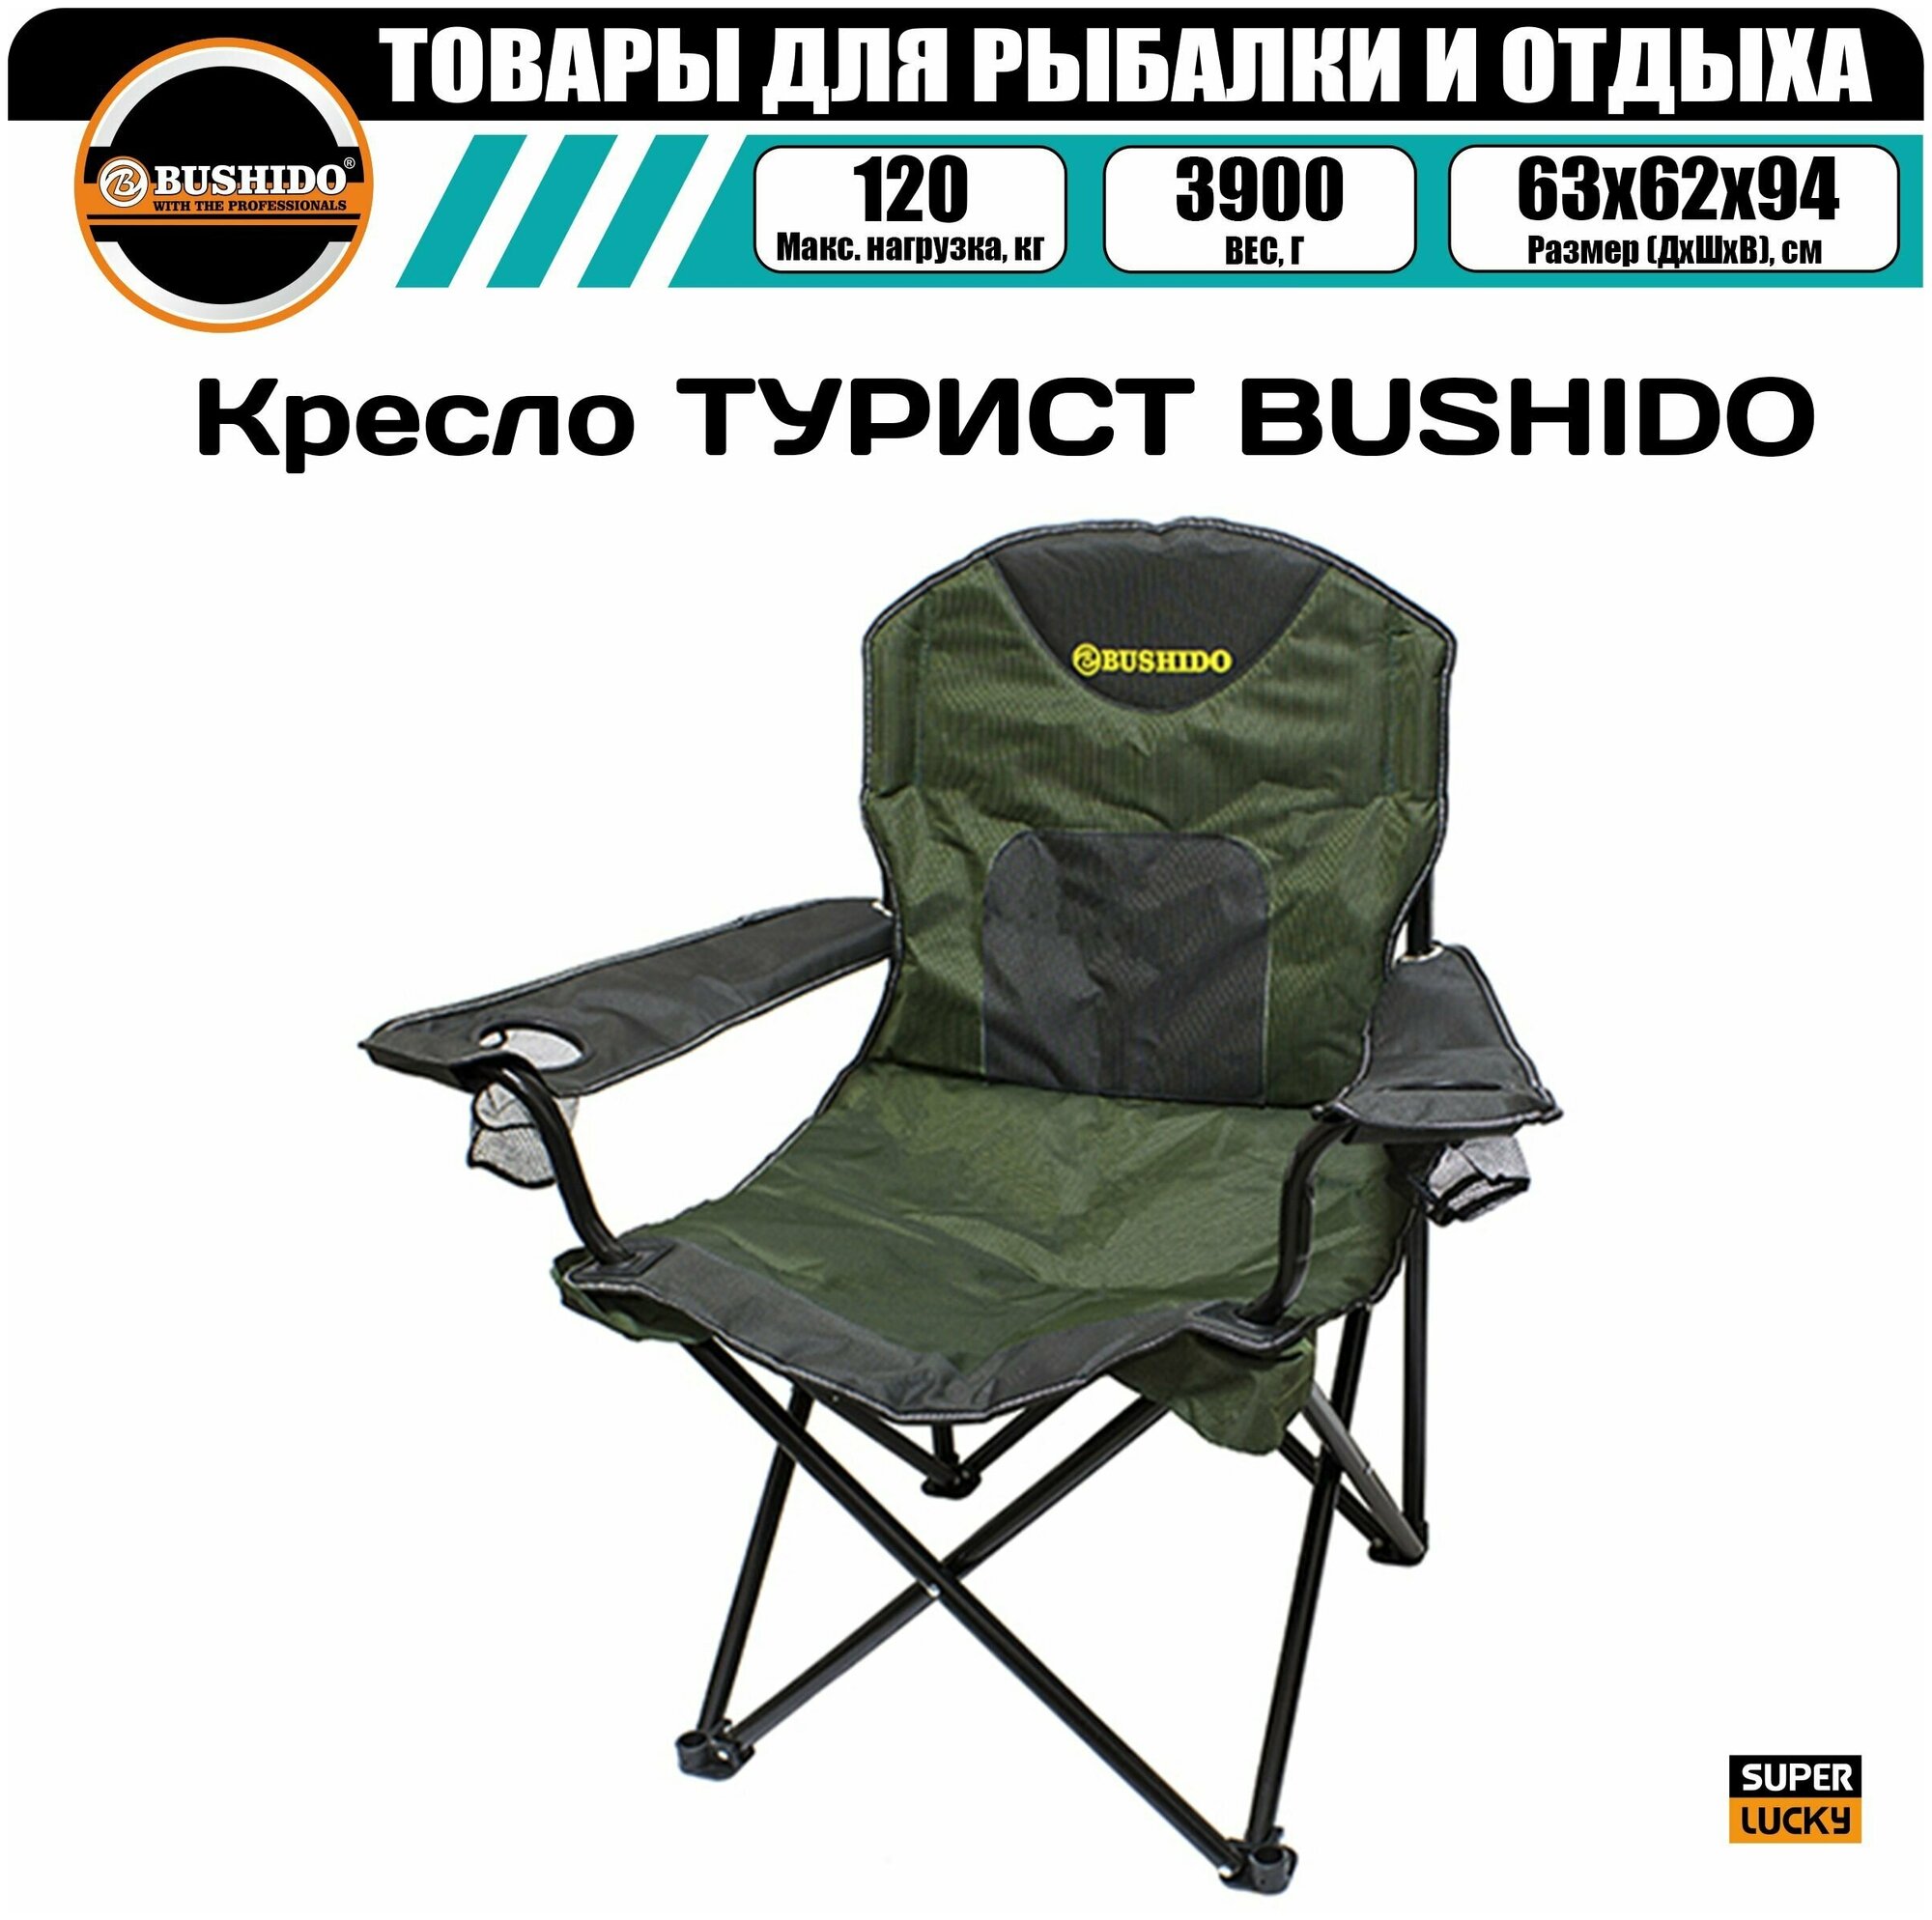 Кресло карповое BUSHIDO с подлокотниками, 2 подстаканника, складное, туристическое, тканевый чехол для переноски и транспортировки, запасная подставка для ножки